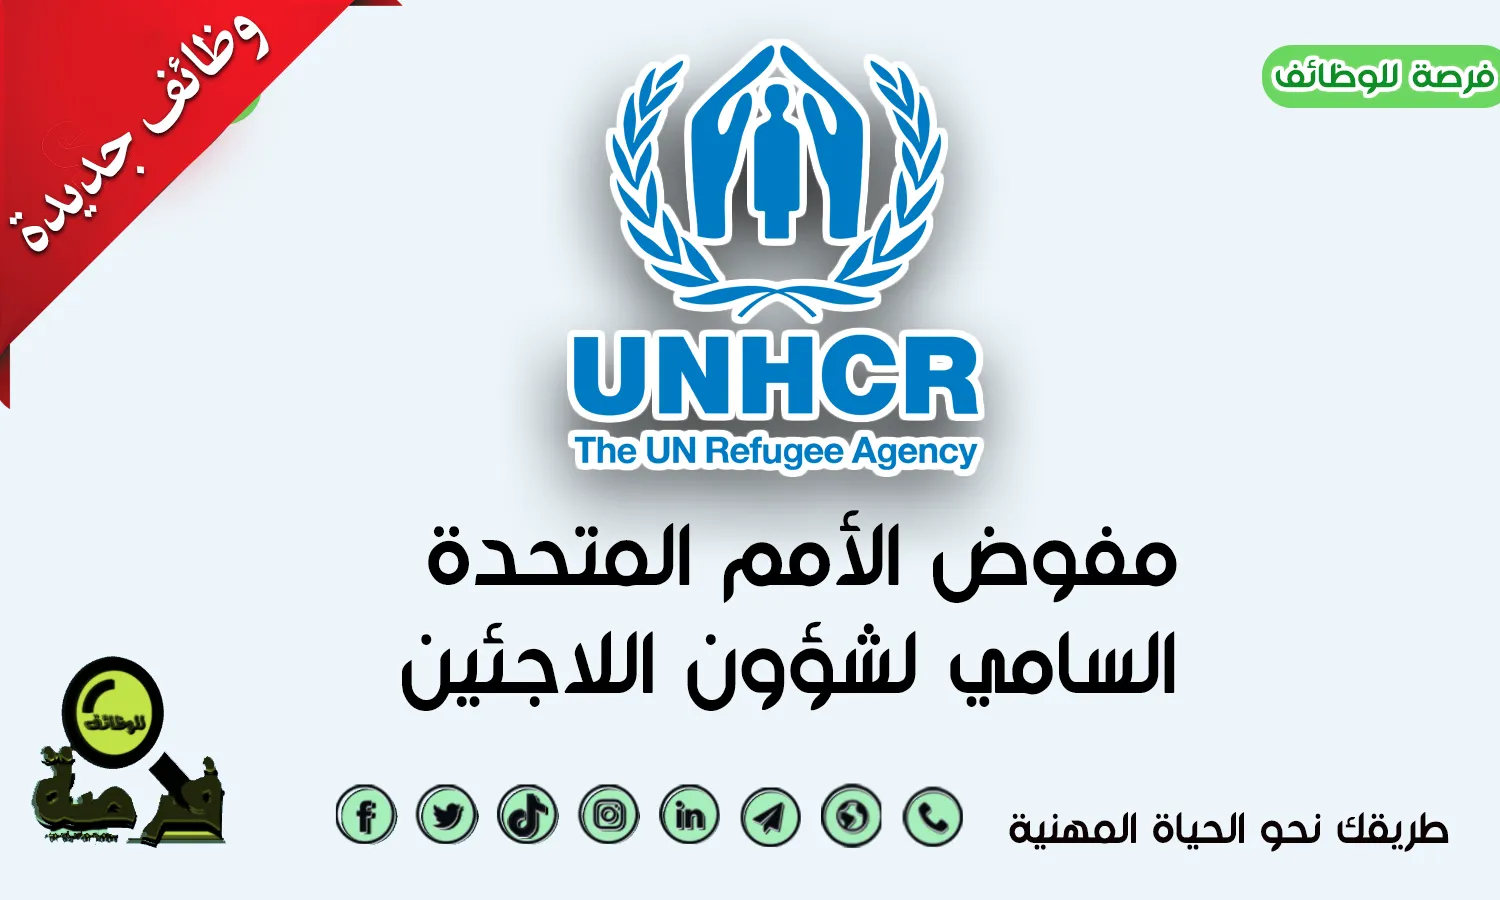 مساعد تكنولوجيا المعلومات بكسلا  IT Assistant |  منظمة UNHCR 